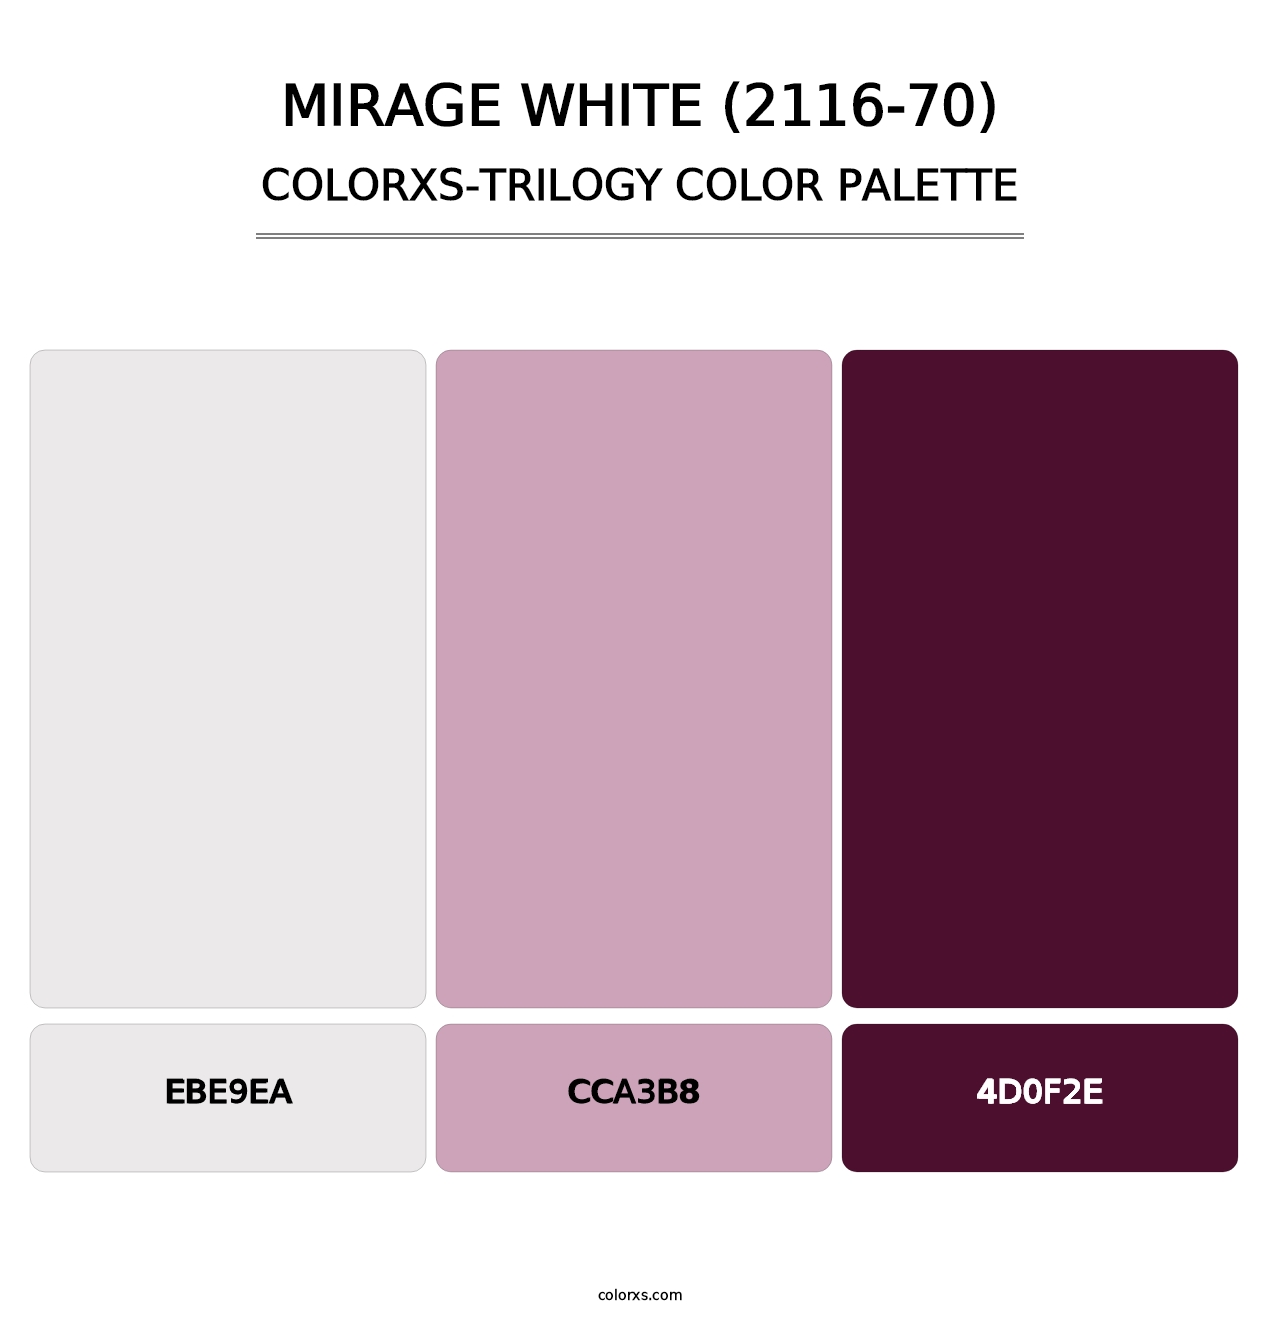 Mirage White (2116-70) - Colorxs Trilogy Palette